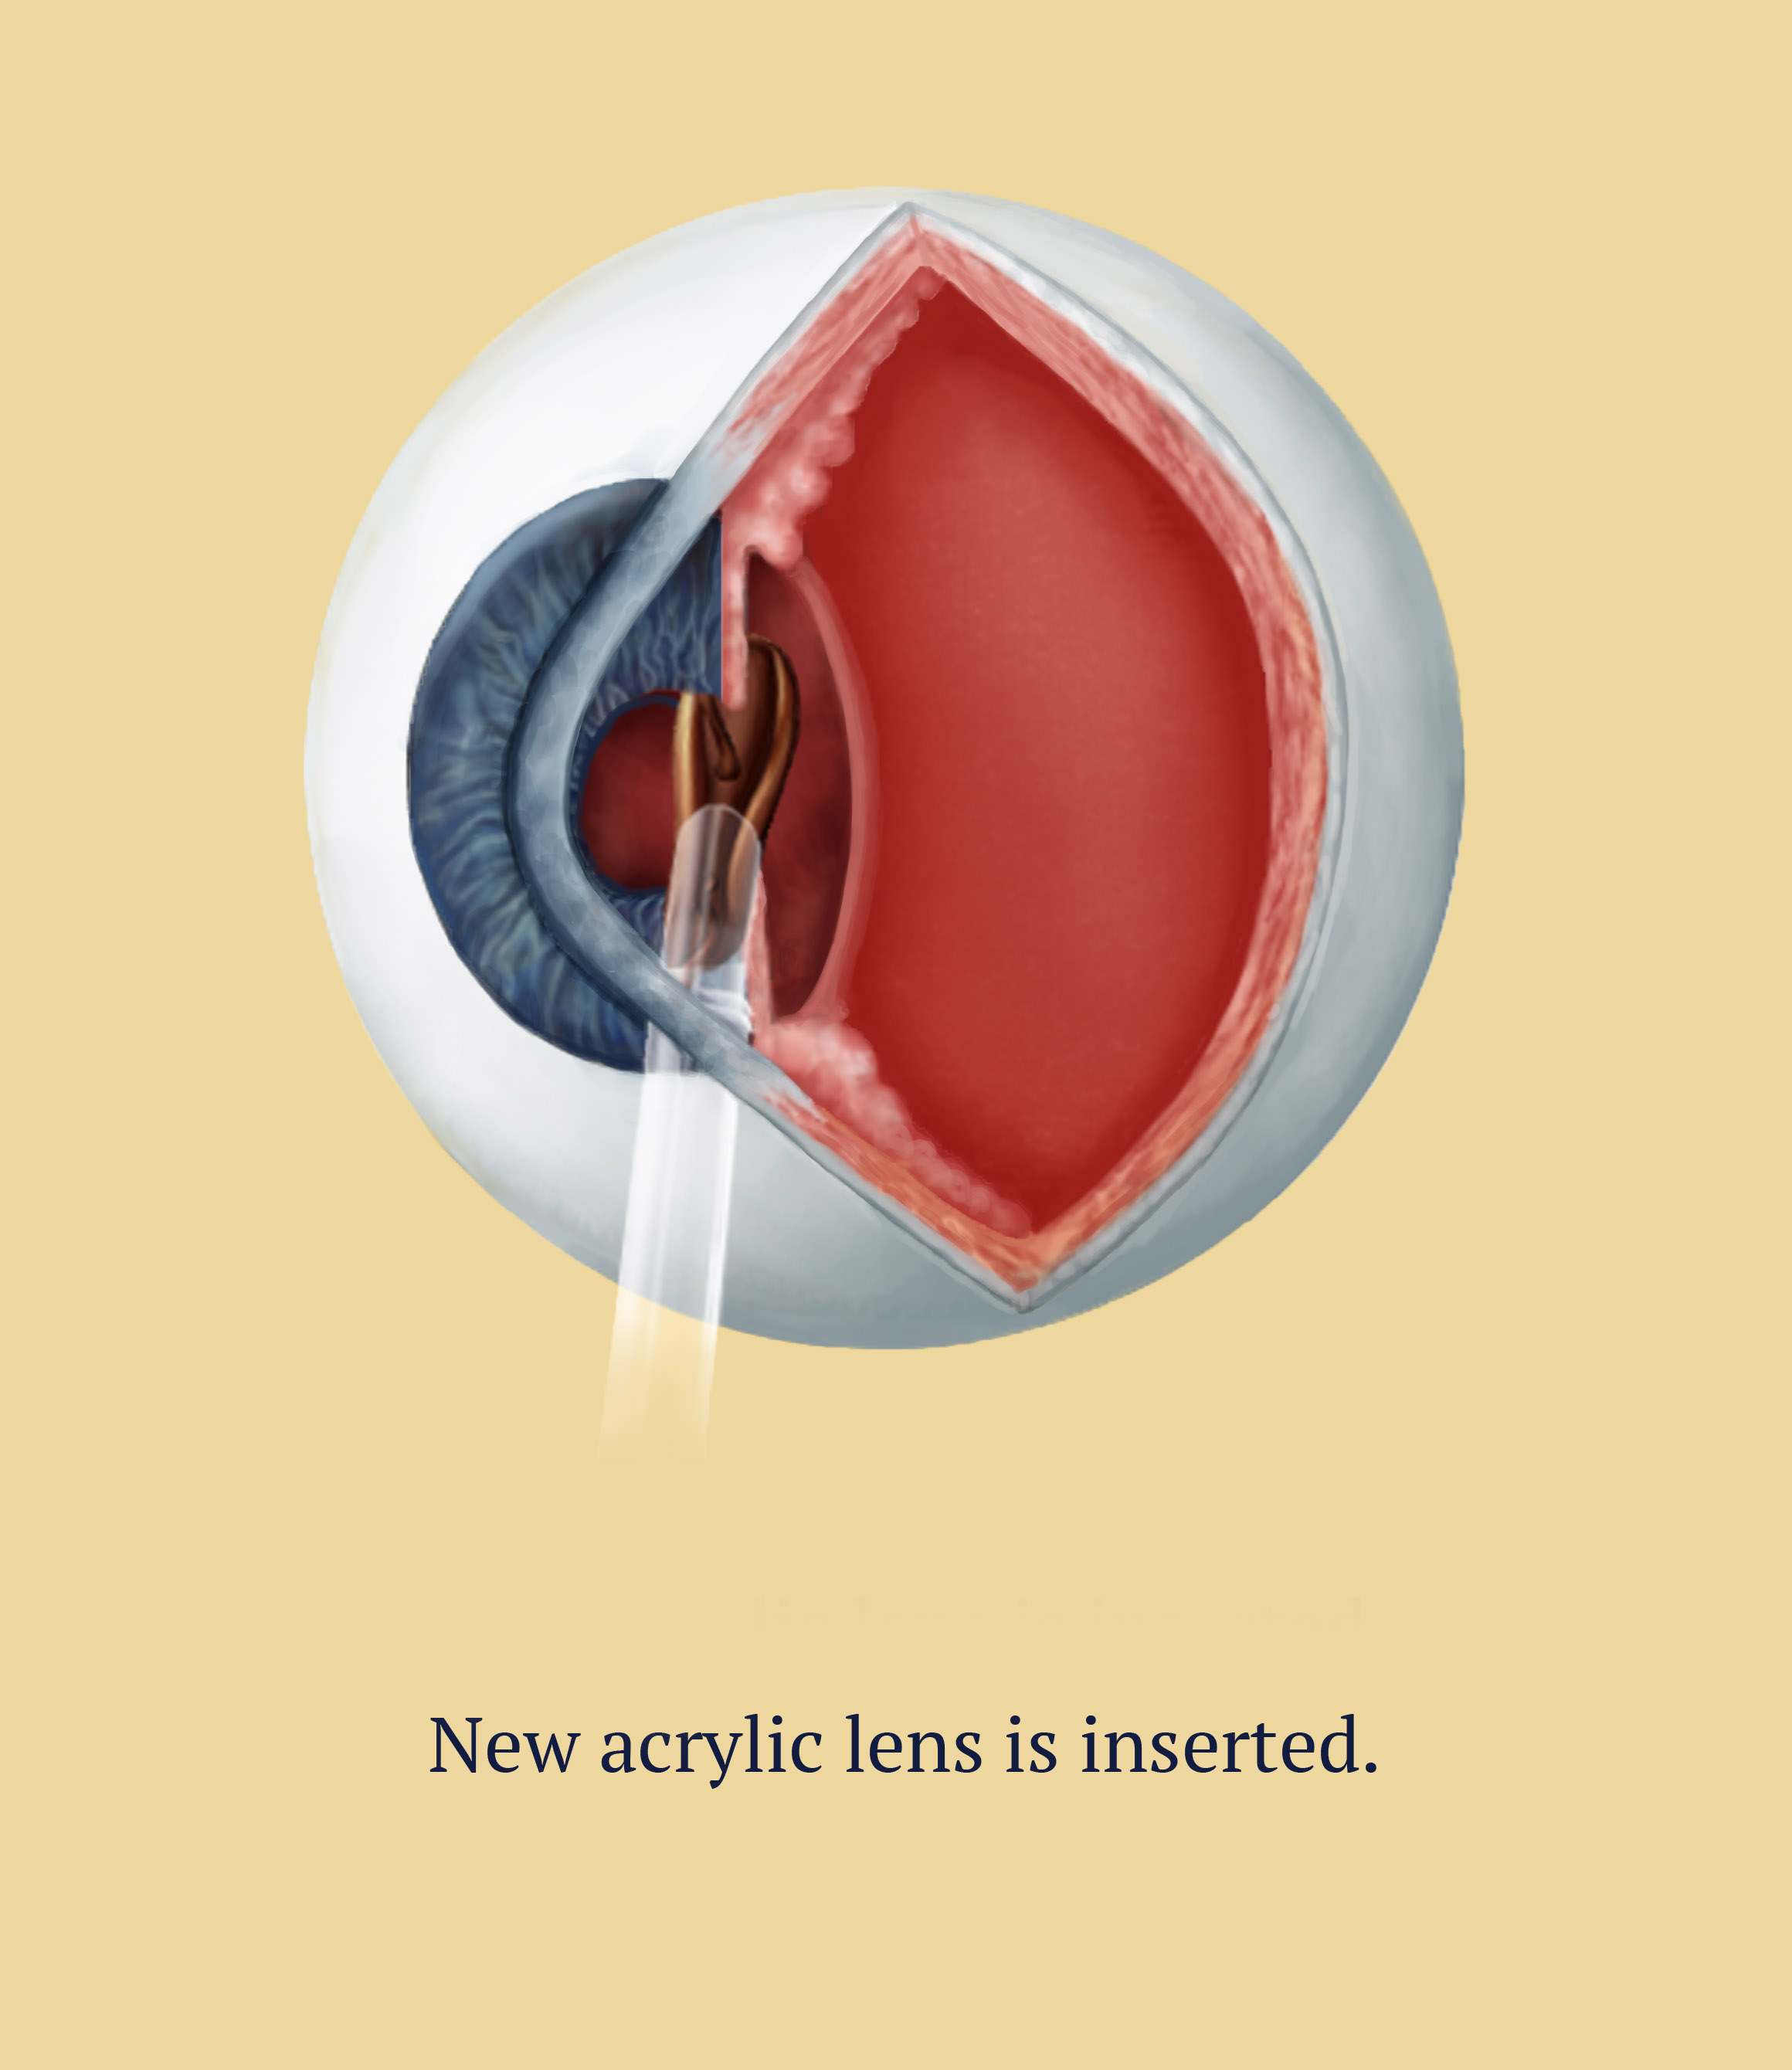 Cataract Surgery, 4 of 6, Illustration